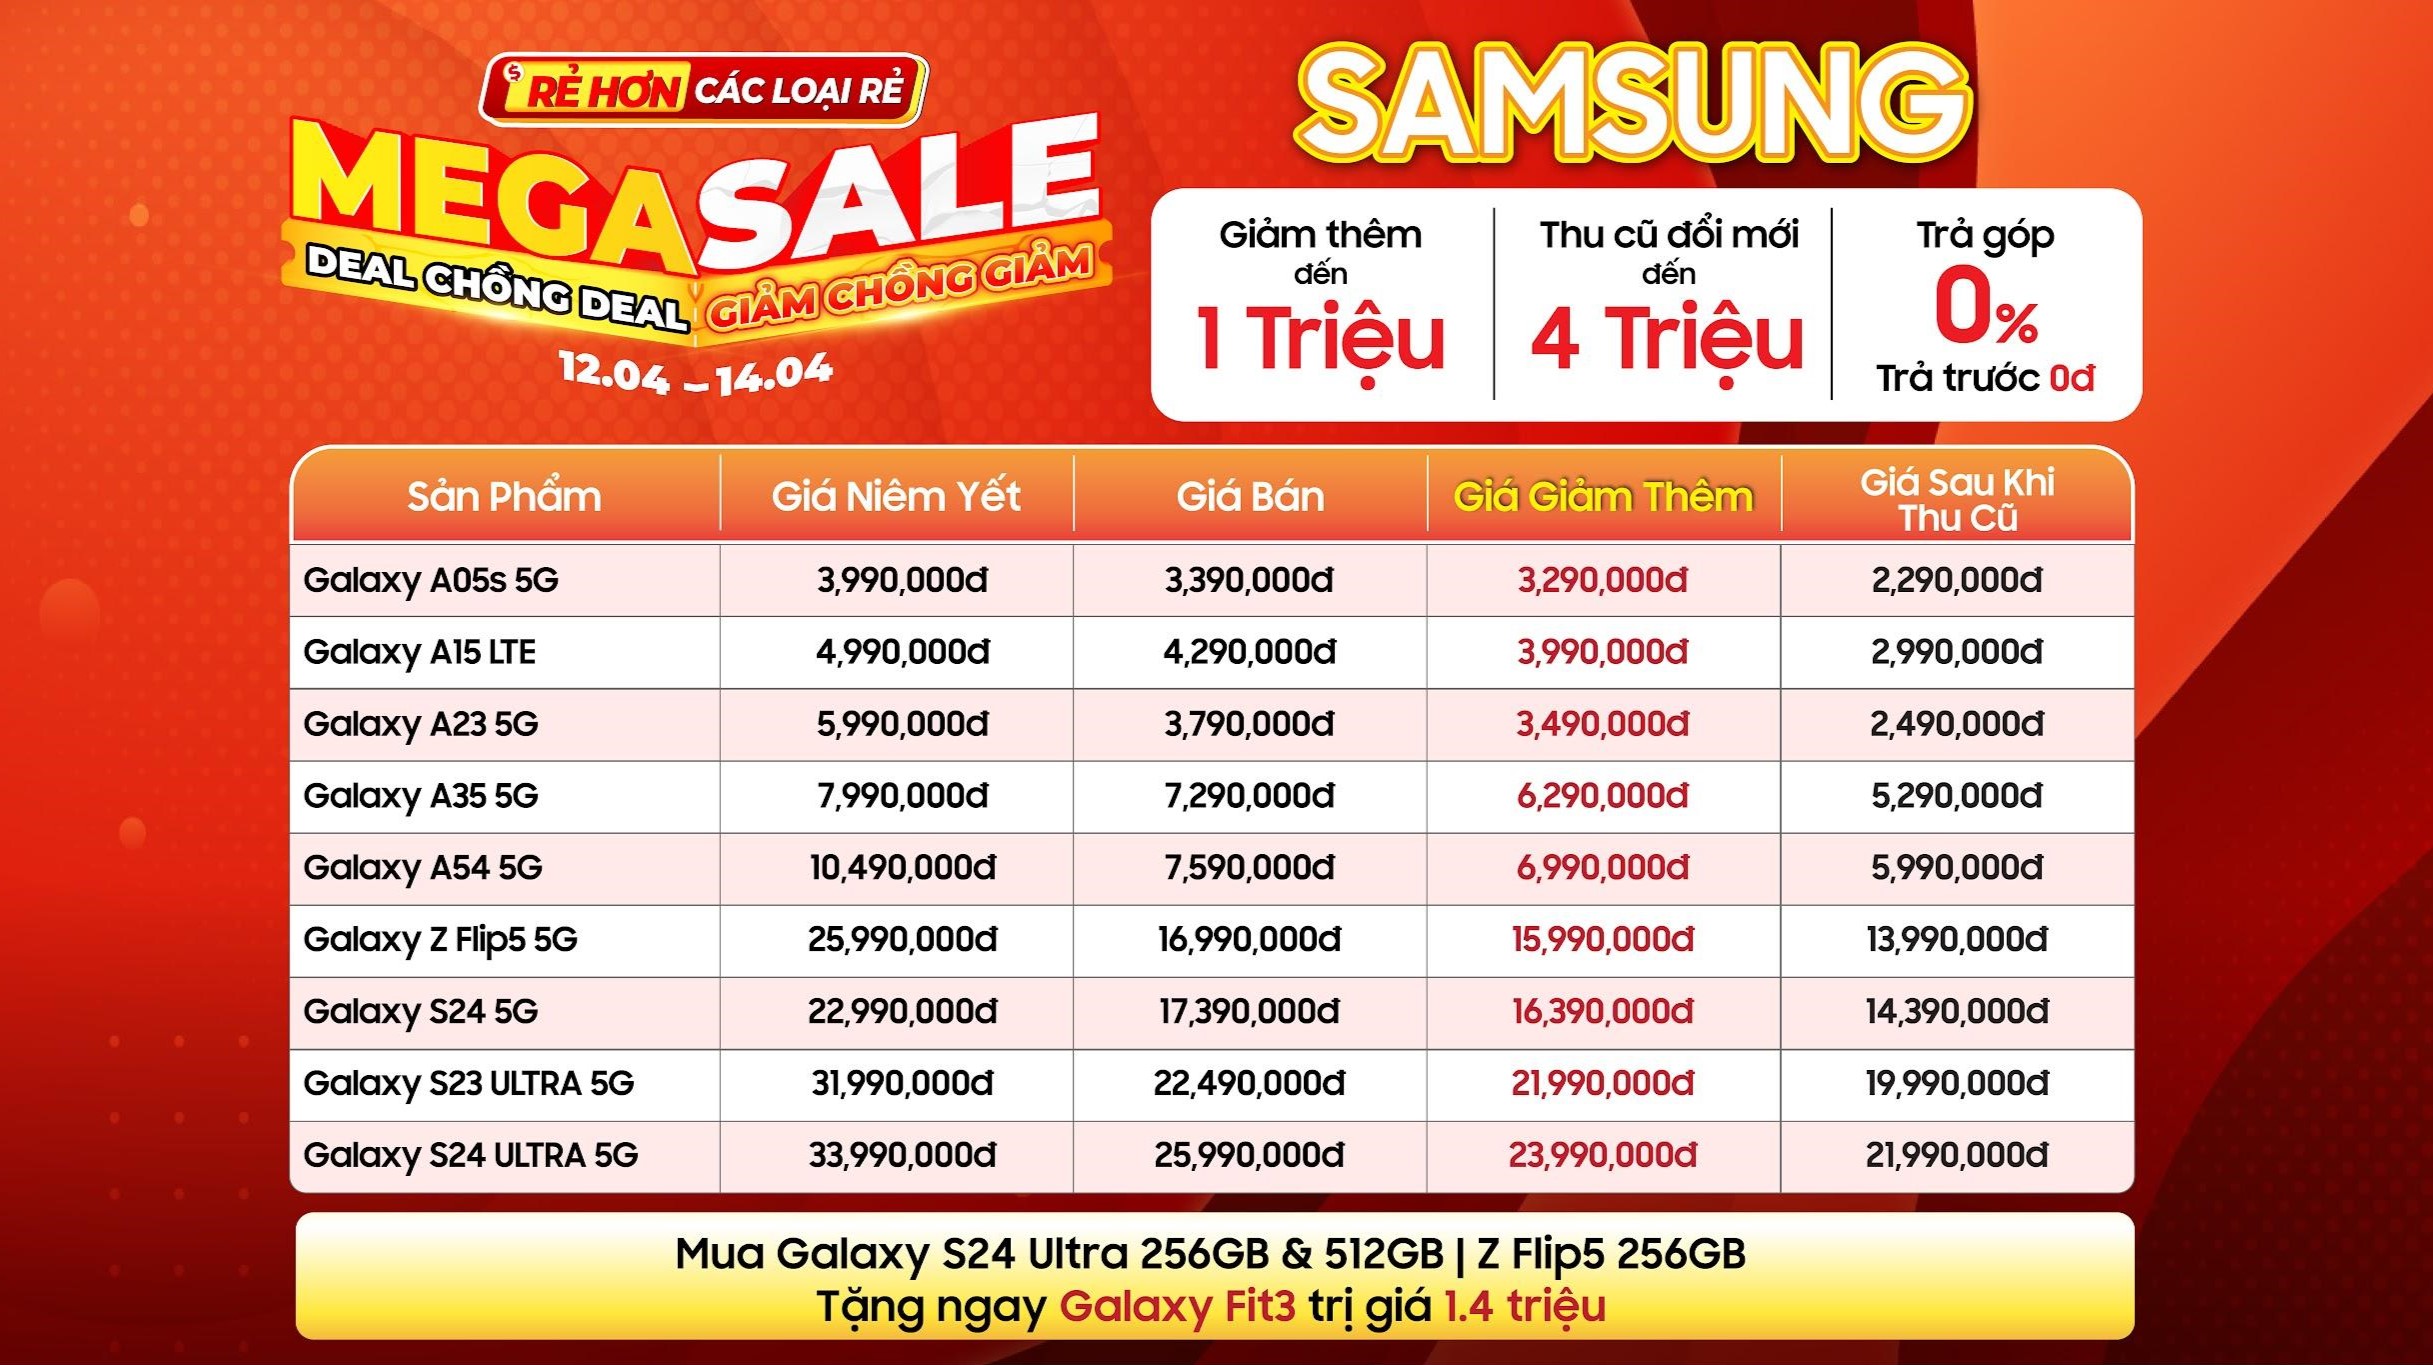 Mega Sale lớn nhất tháng 4: Mua điện thoại tặng Galaxy Fit 3, vạn deal sốc giảm thêm đến 1 triệu đồng, phụ kiện từ 49K 12